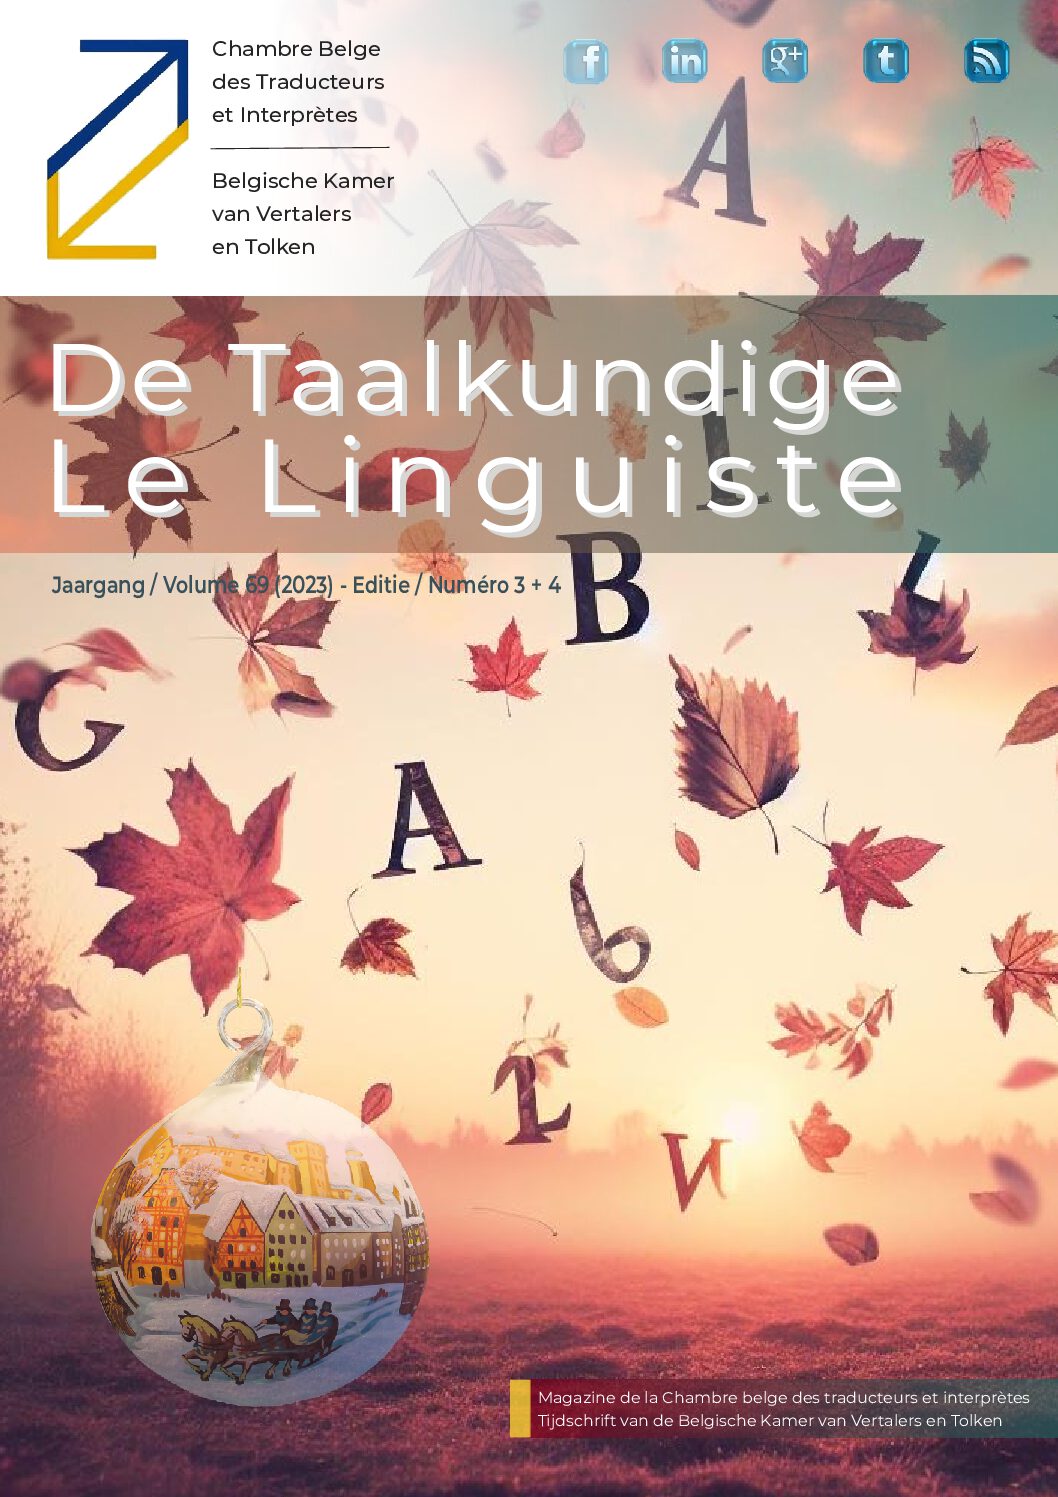 Image de présentation pour le document : De Taalkundige – Le Linguiste 2023-3-4